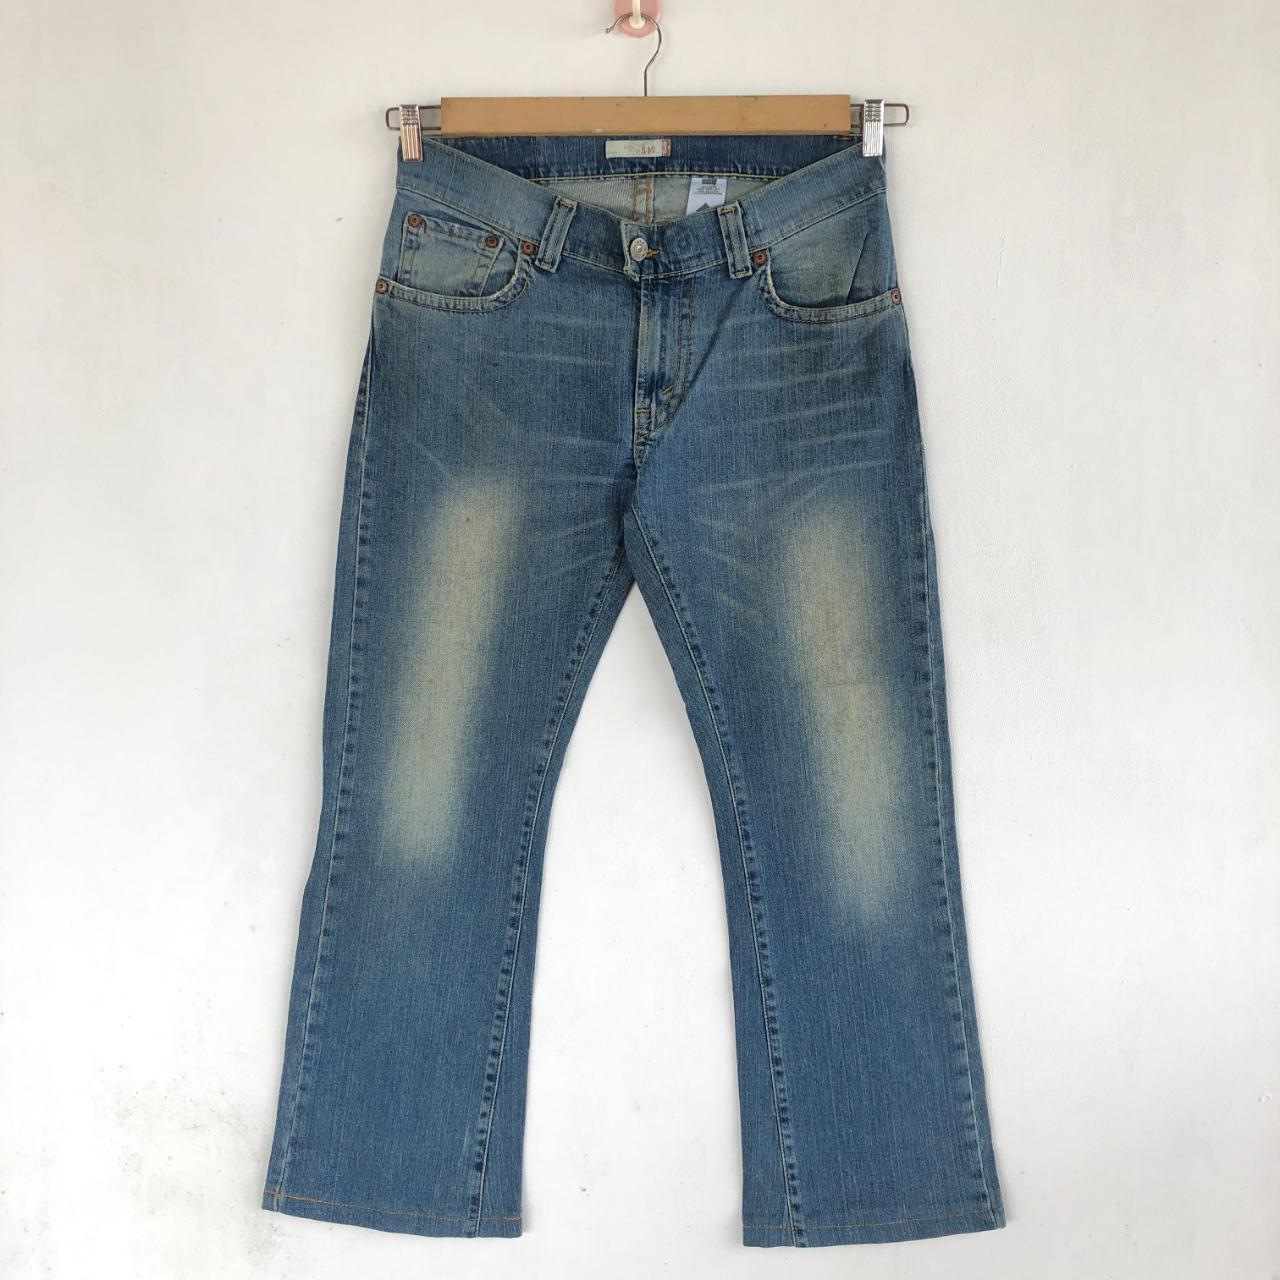 Vintage Levis Jeans Flare Levis 542 Denim Boot Cut... - Depop